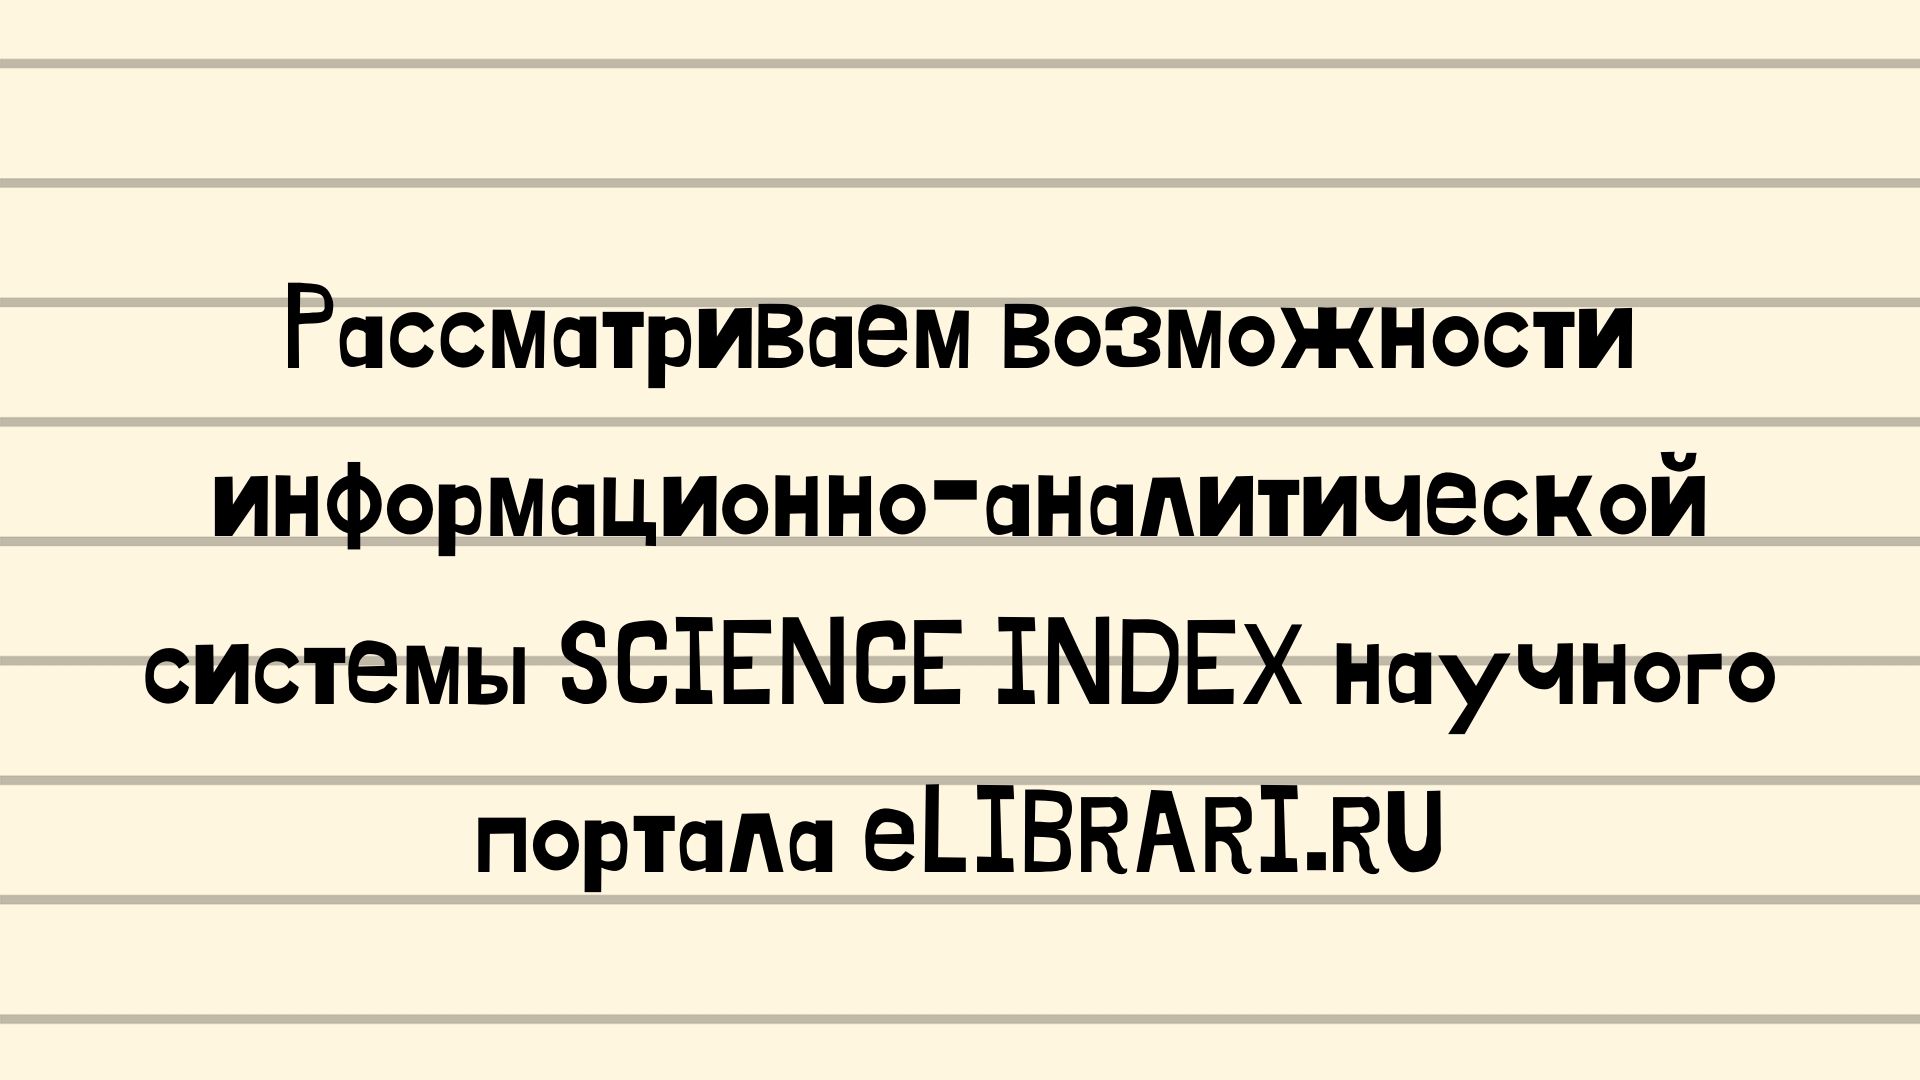 Рассматриваем возможности информационно-аналитической системы SCIENCE INDEX научного портала eLIBRARI.RU